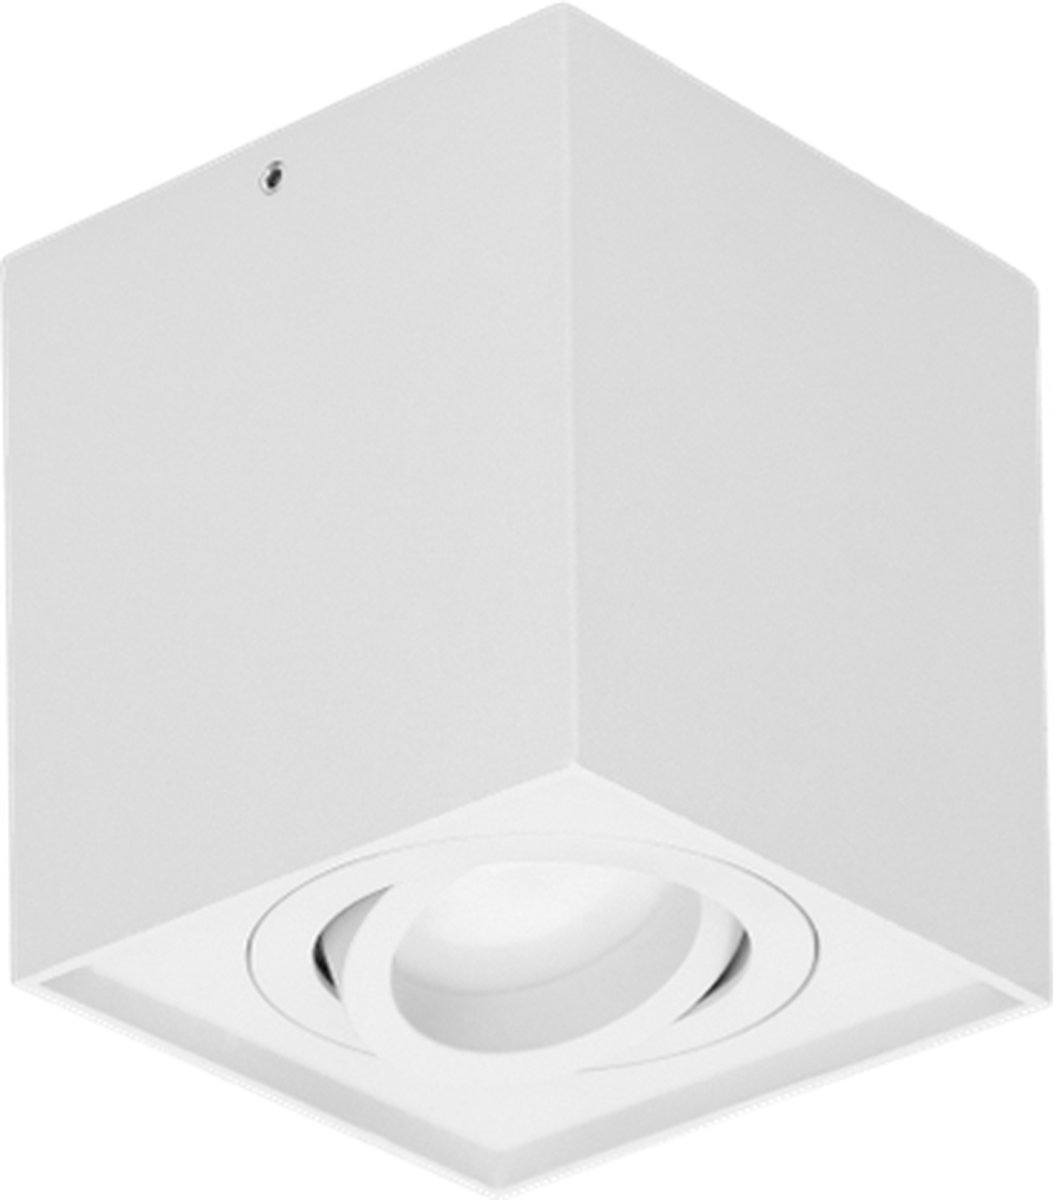 Plafondlamp CAROLIN - Wandlamp binnen - Vierkante opbouwspot met Richtbare lichtbron - GU10- Wit